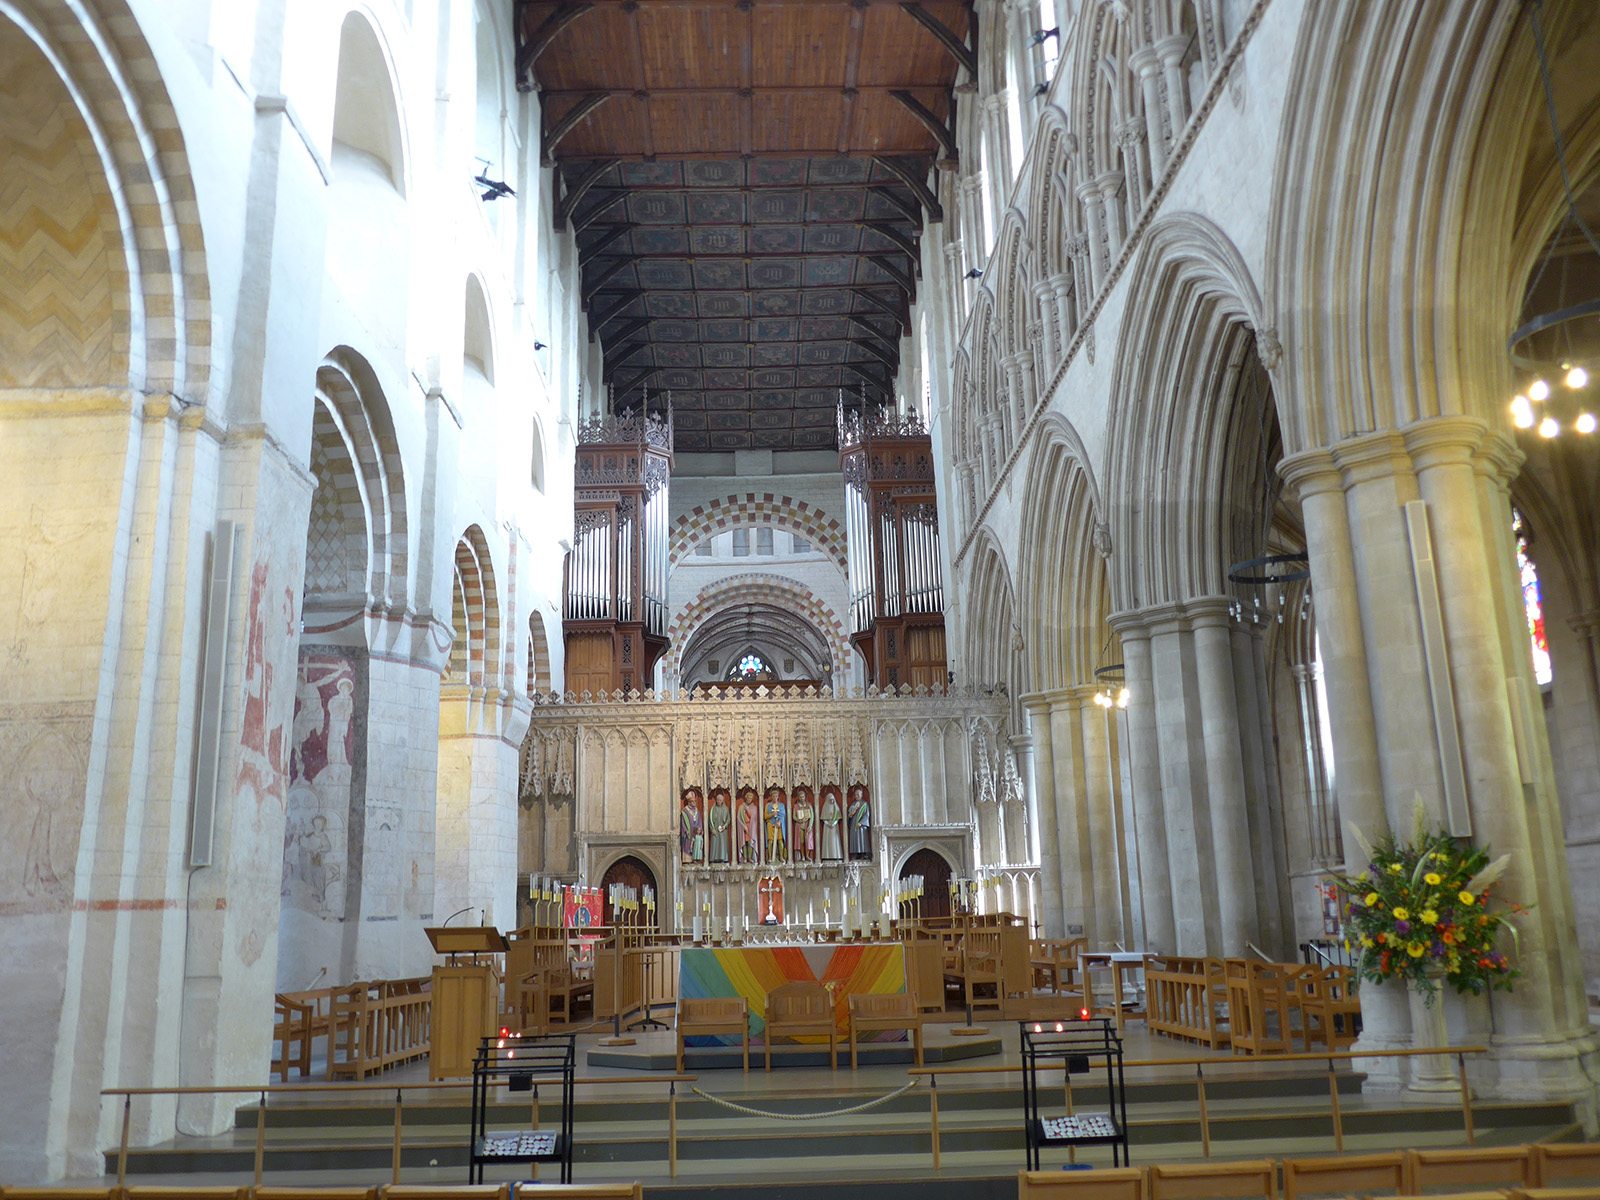 The Cathedral and Abbey Church of St. Alban s nejdelší kostelní lodí v Anglii